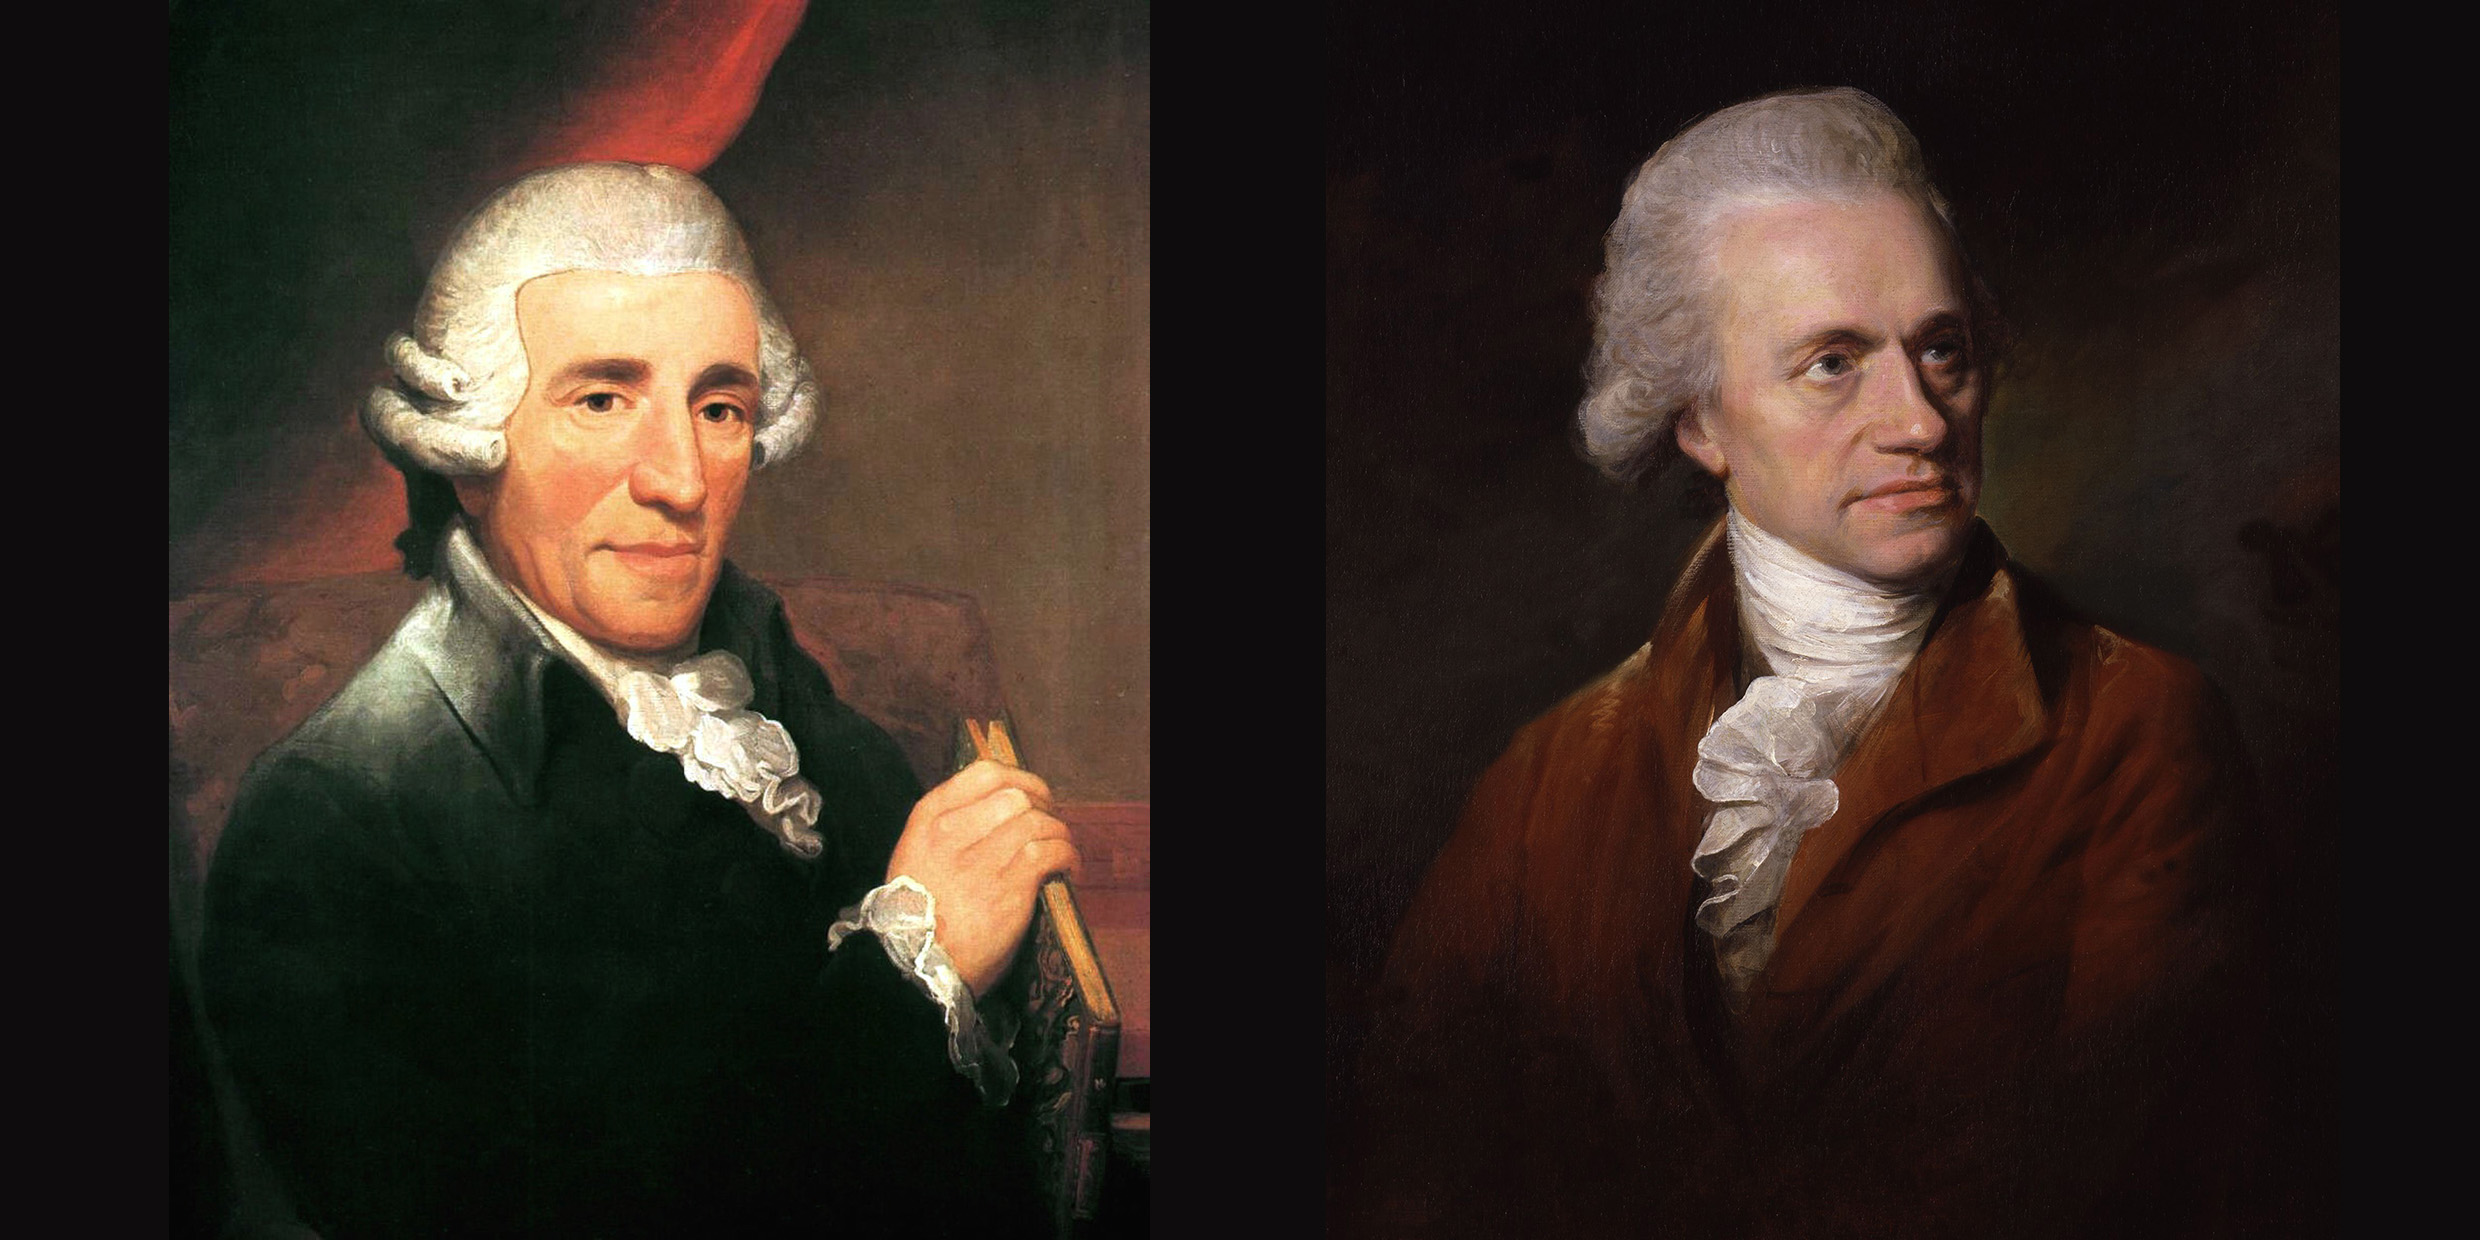 Portraits of Haydn and Herschel